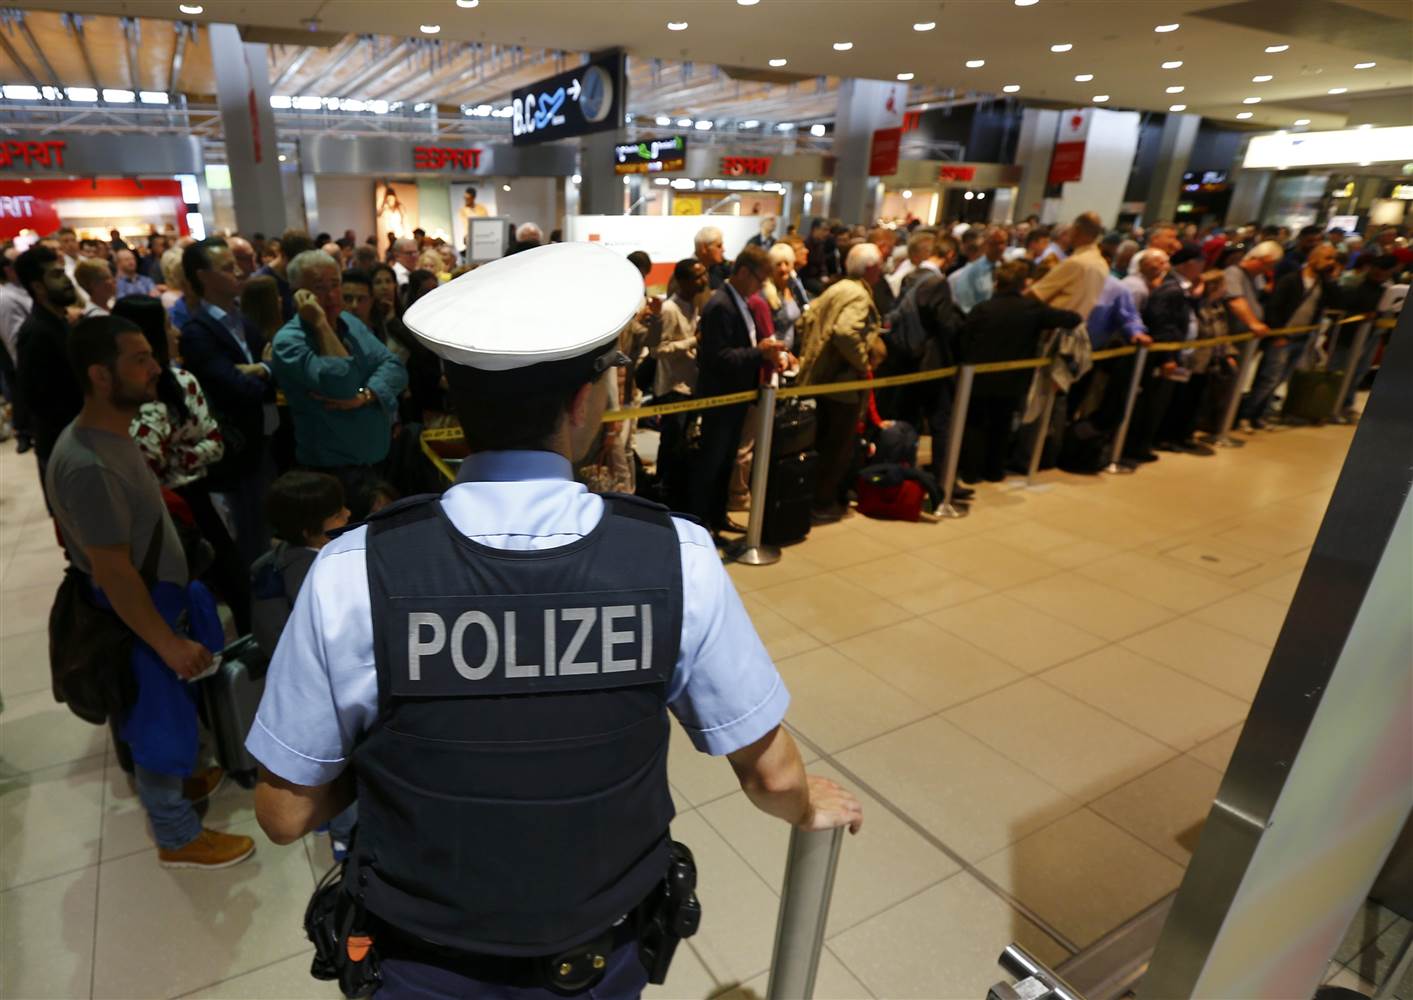 Λήξη συναγερμού στη Γερμανία – Συνέλαβαν τον ύποπτο που αναστάτωσε το αεροδρόμιο